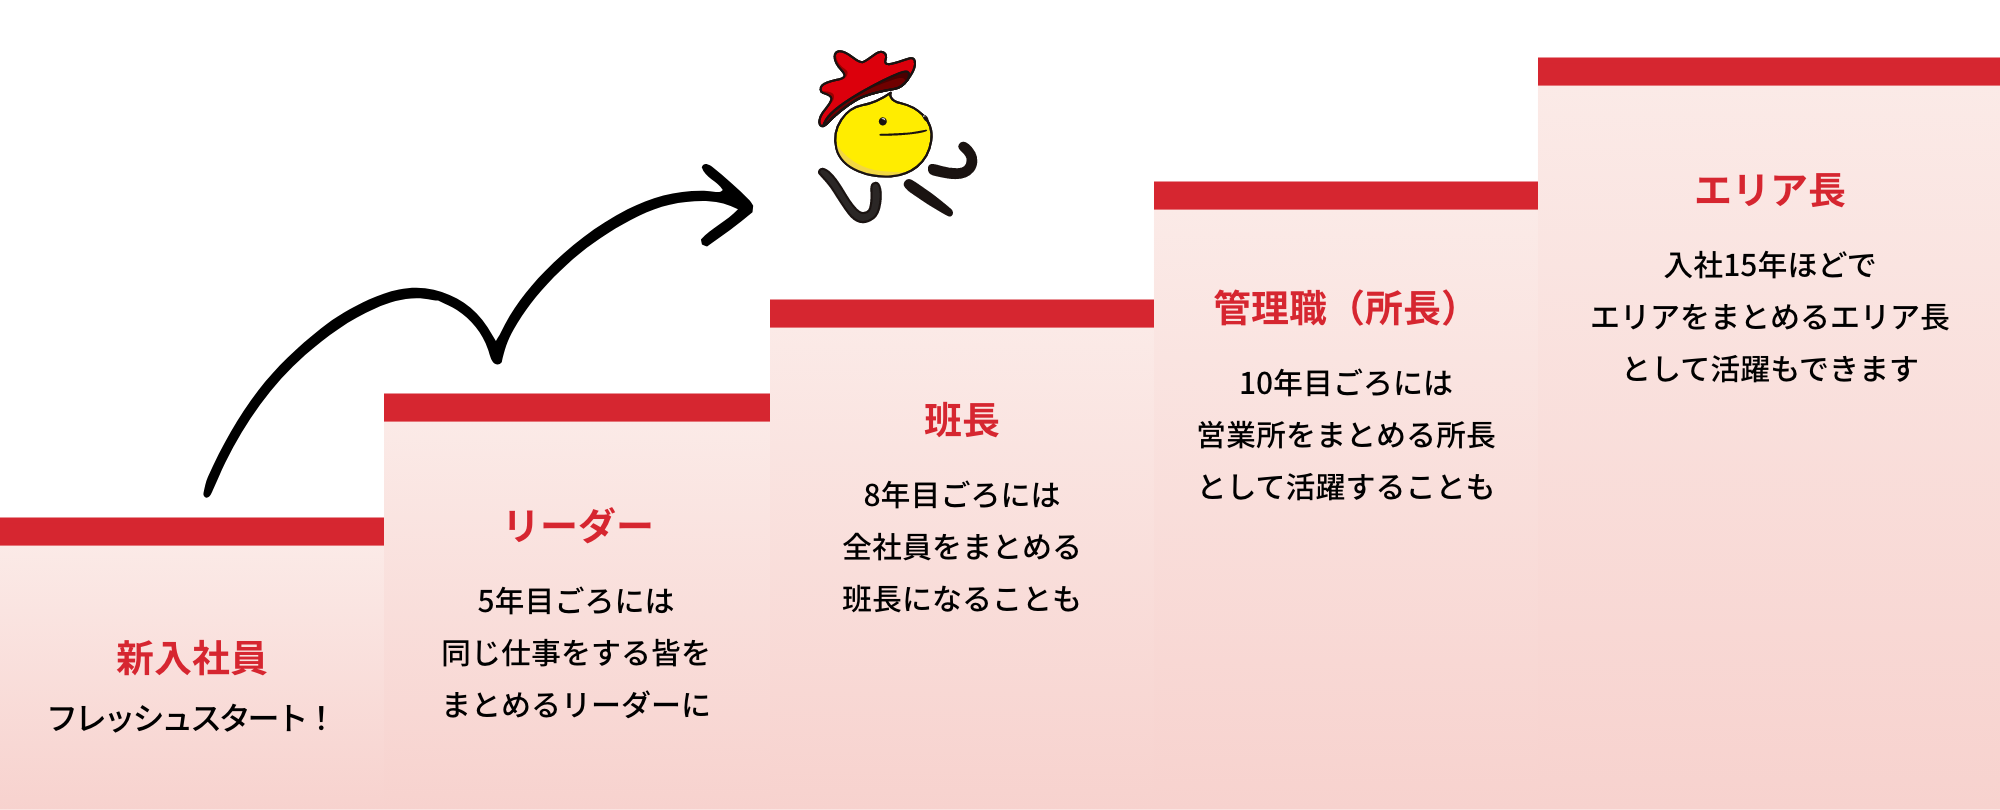 吉川運輸のキャリアステップイメージ